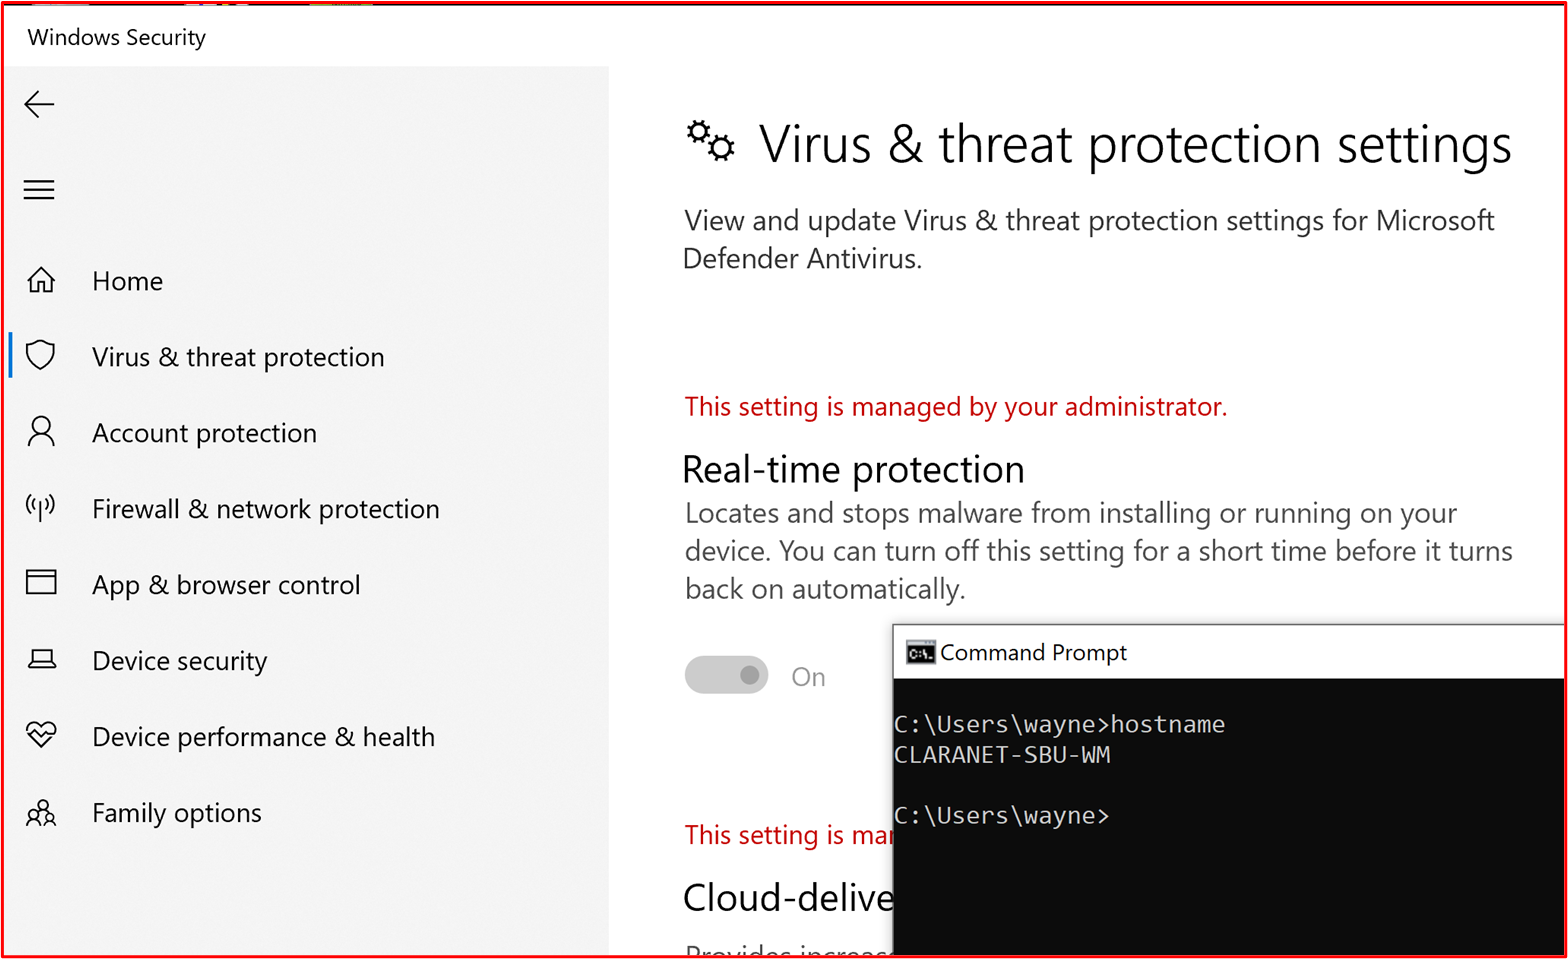 屏幕截图显示主机“CLARANET-SBU-WM”配置了针对Microsoft Defender防病毒的实时保护。